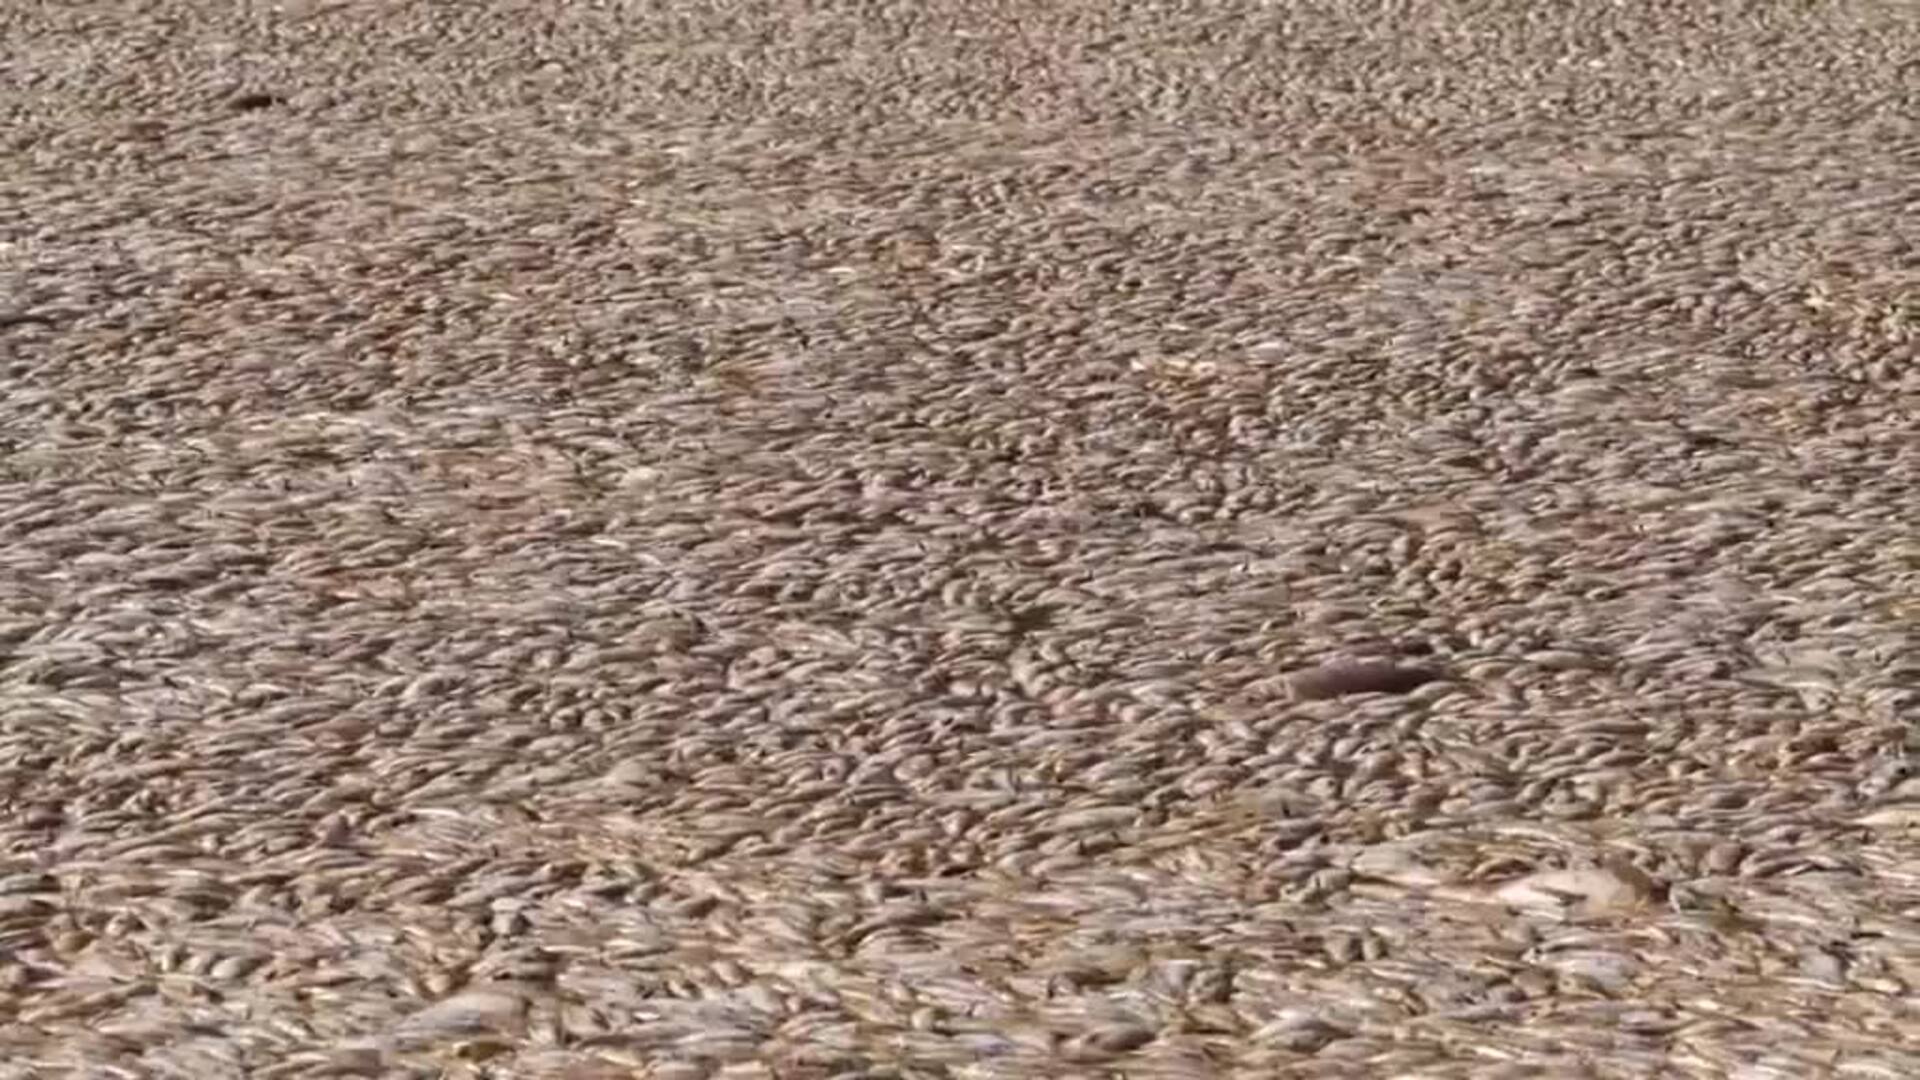 Millones de peces muertos por el calor bloquean un río de Australia